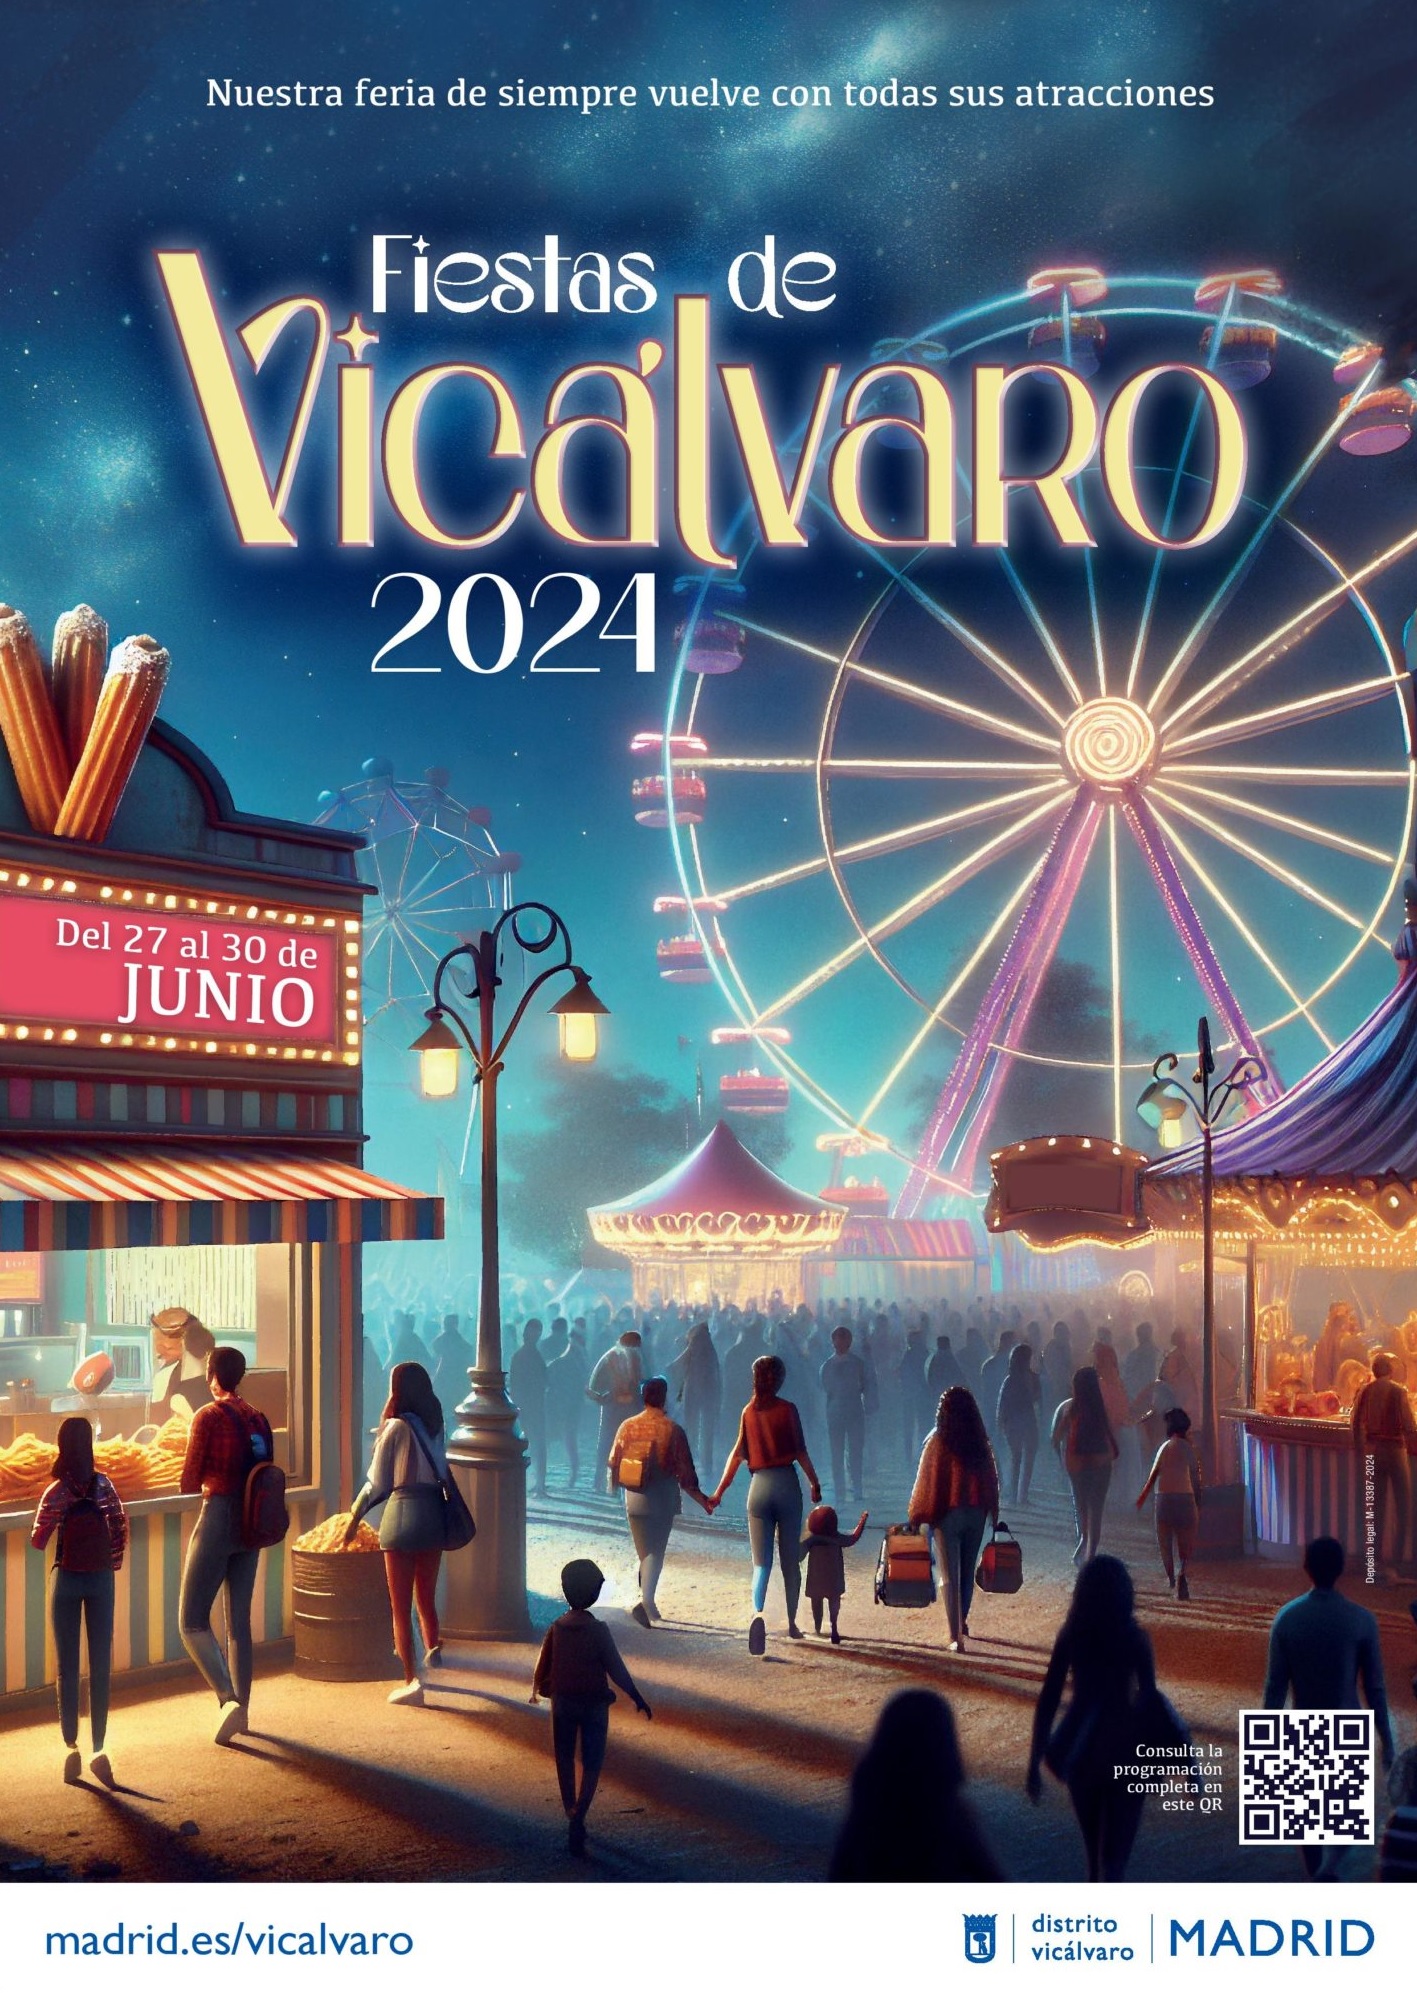 Las fiestas populares de Vicálvaro recuperan las atracciones de feria y llegan hasta El Cañaveral – Diario del Ayuntamiento de Madrid